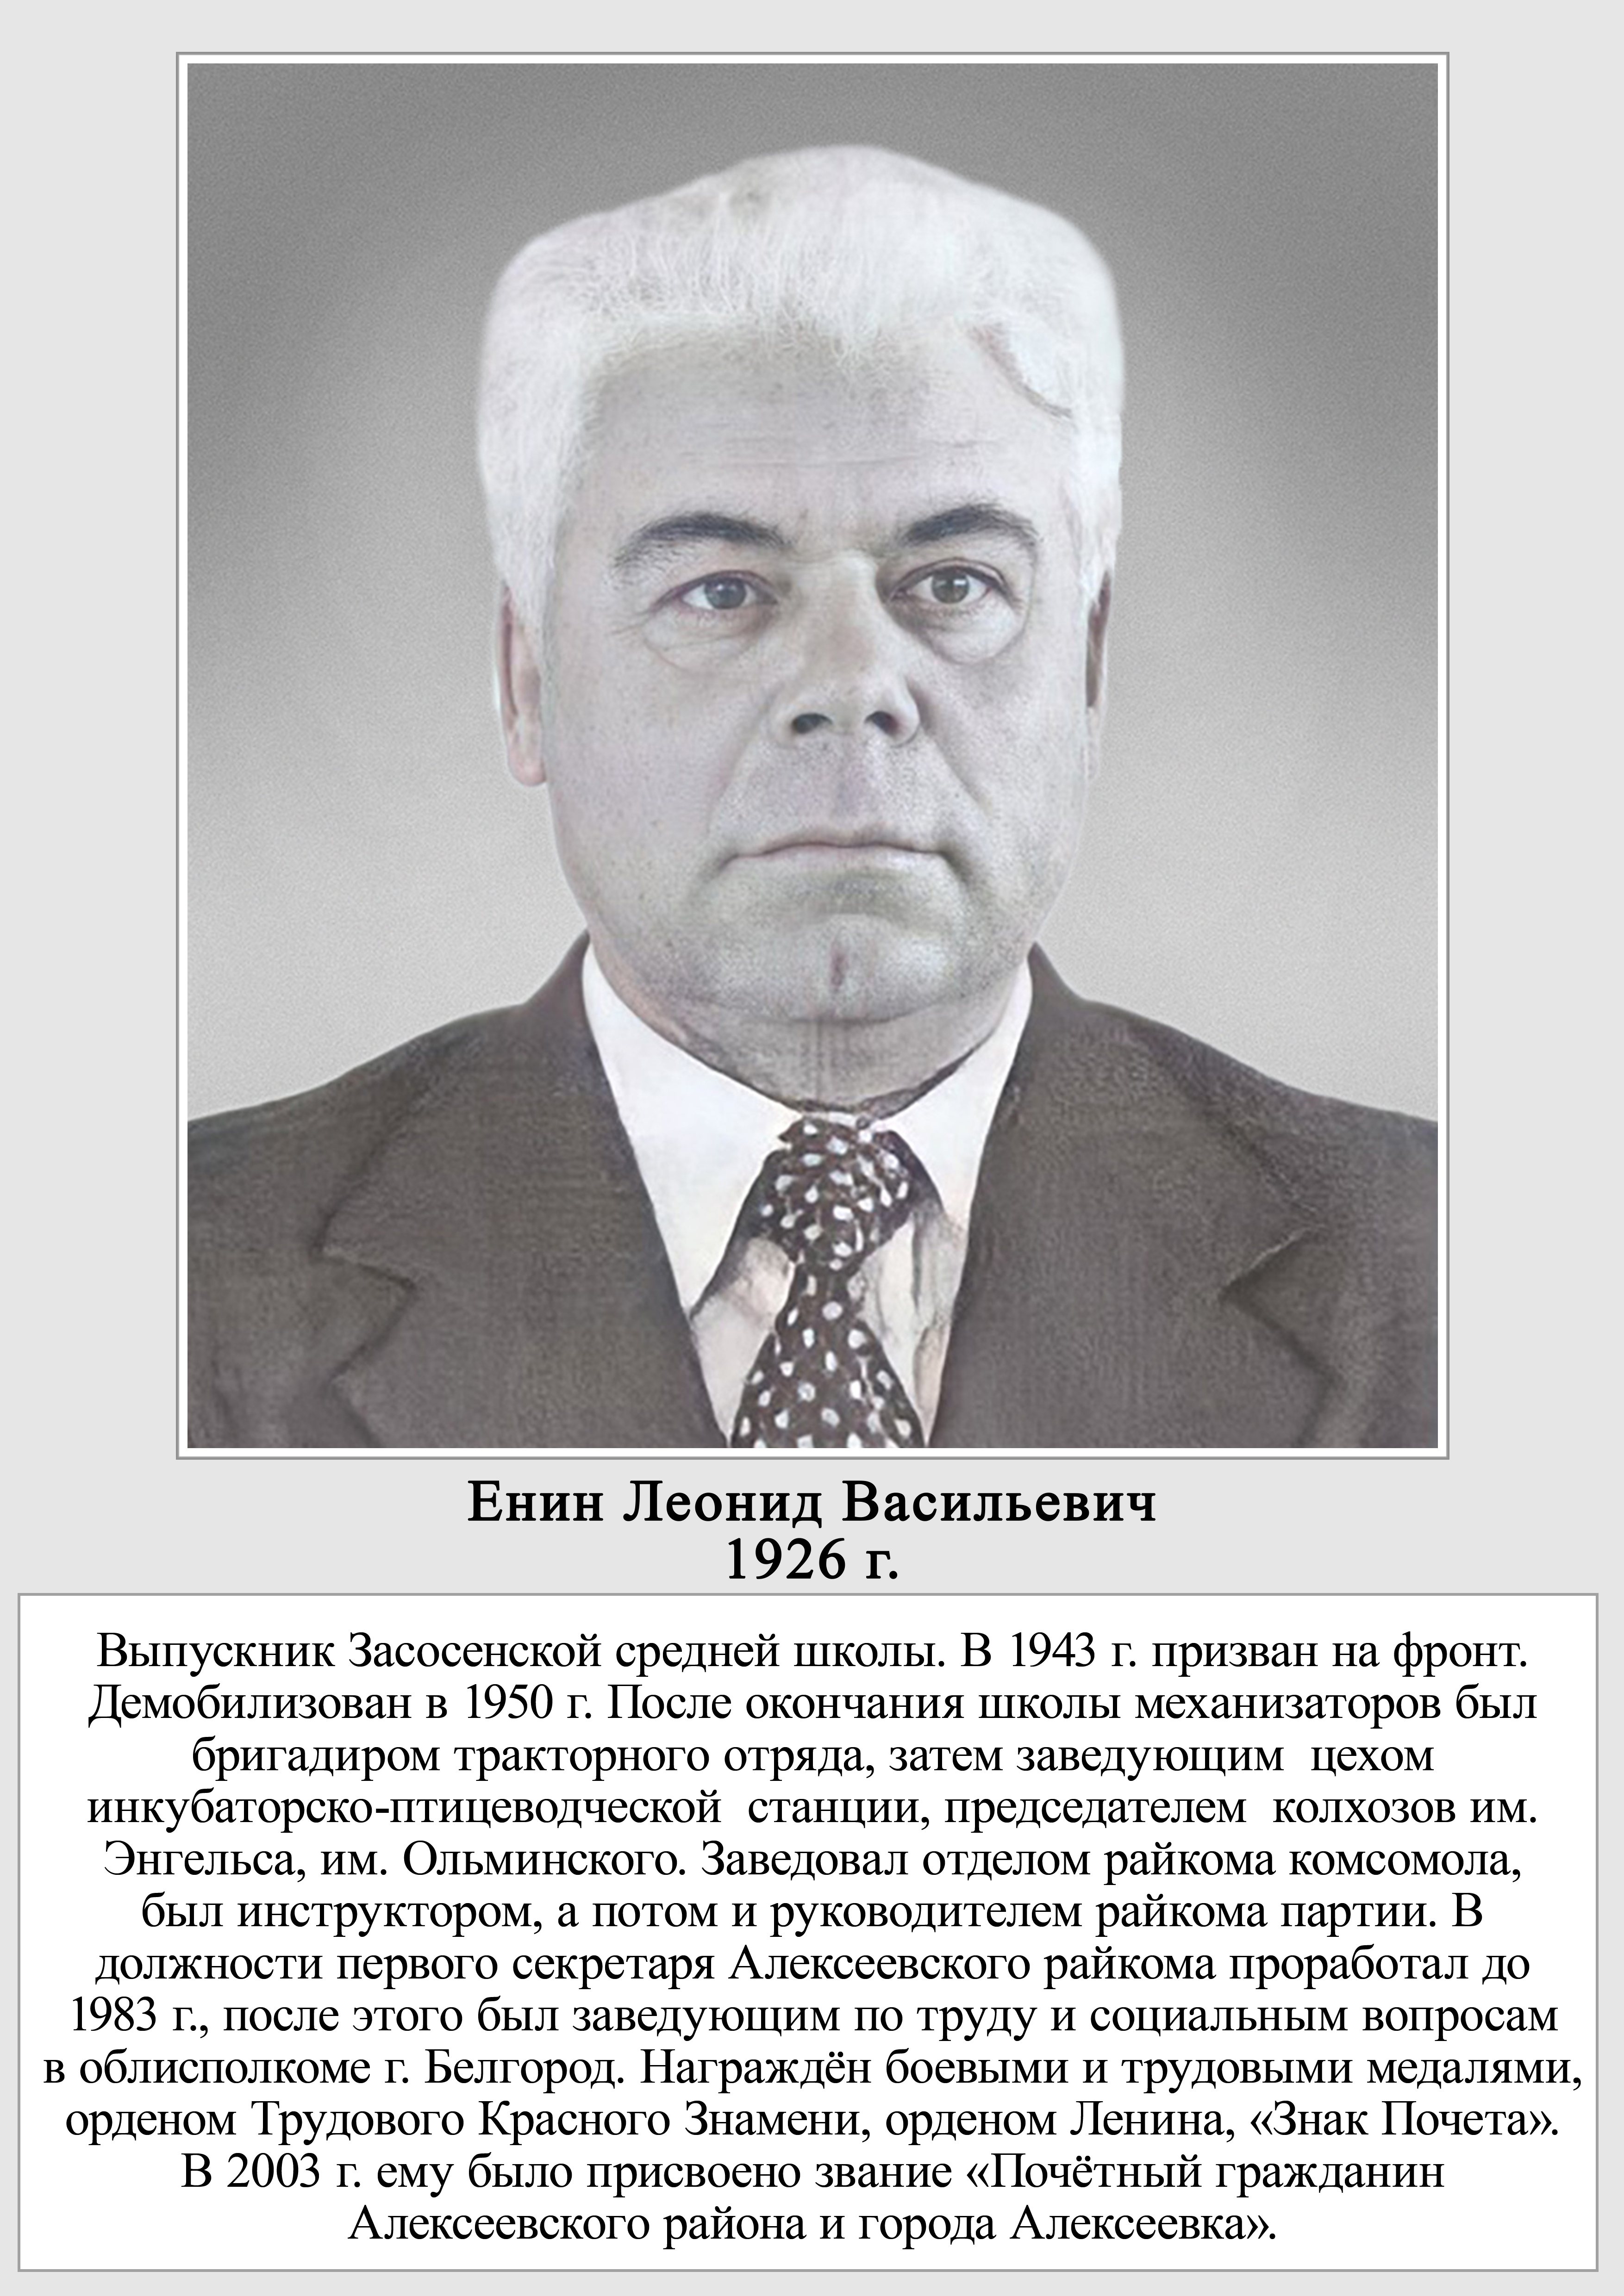 Енин Леонид Васильевич.